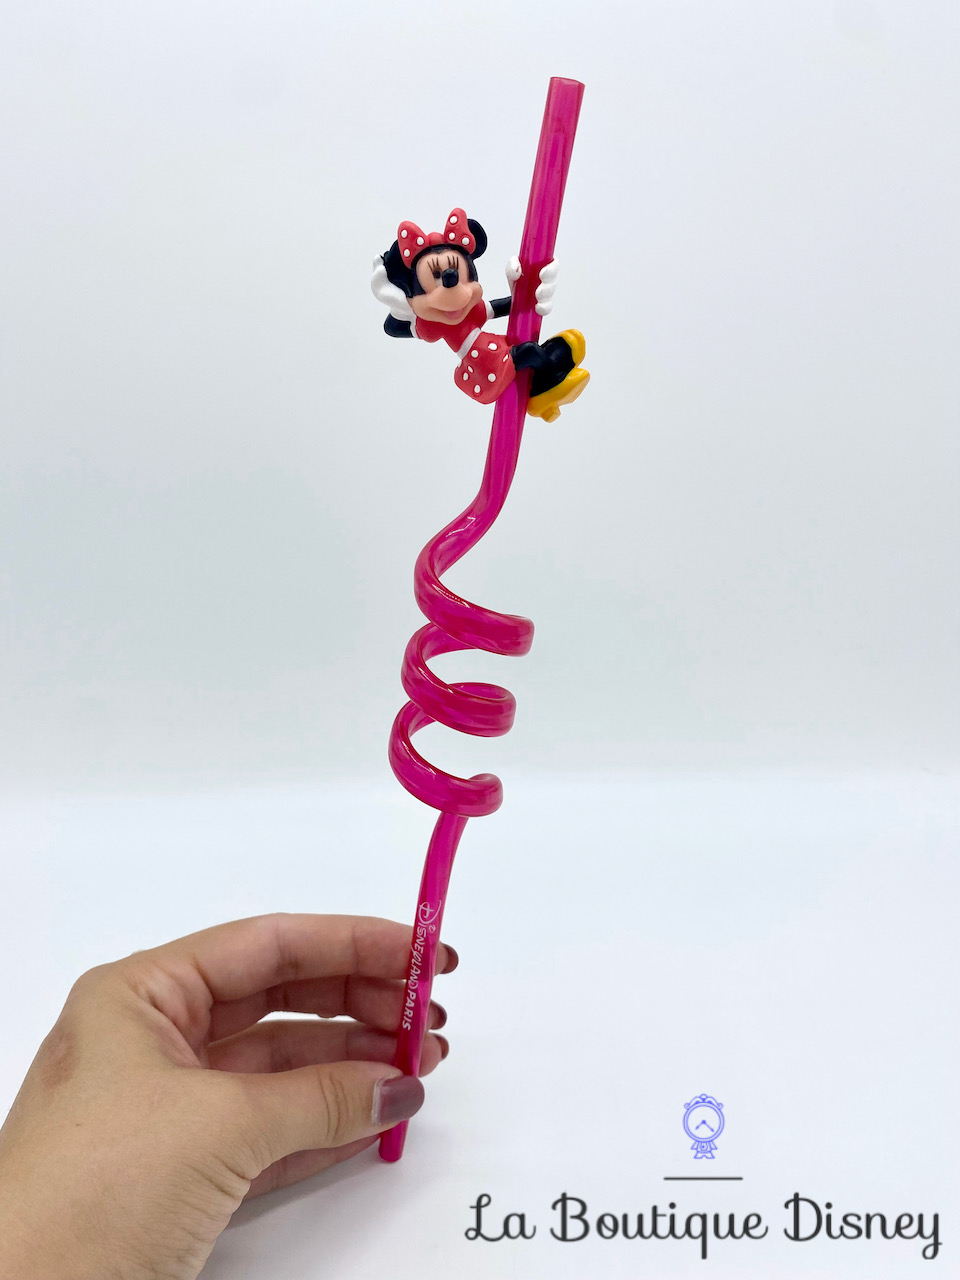 Paille Minnie Mouse Disneyland Paris Disney plastique rose rouge tourbillon